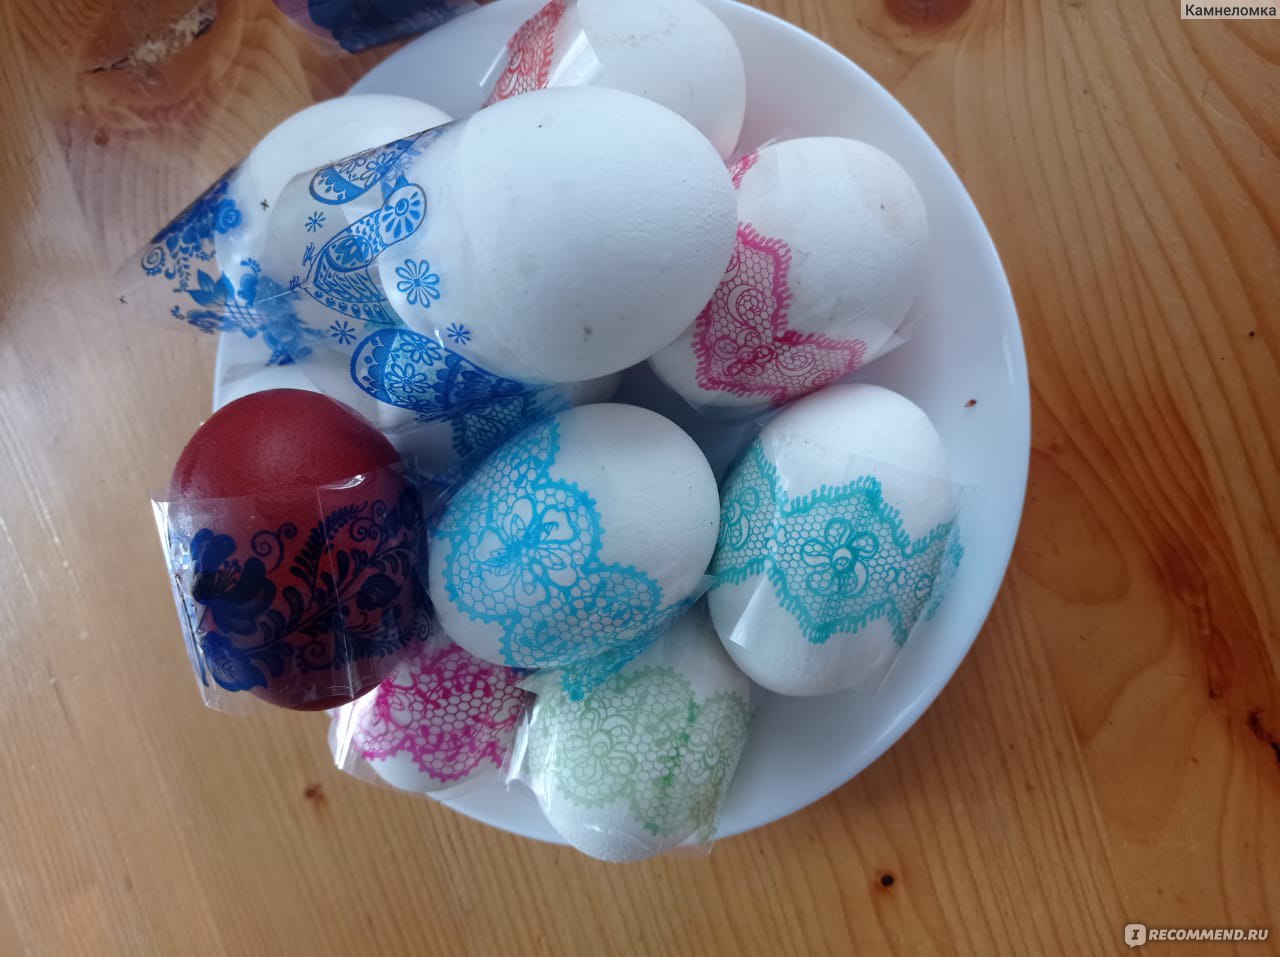 Видео: как покрасить мерцающие яйца к Пасхе